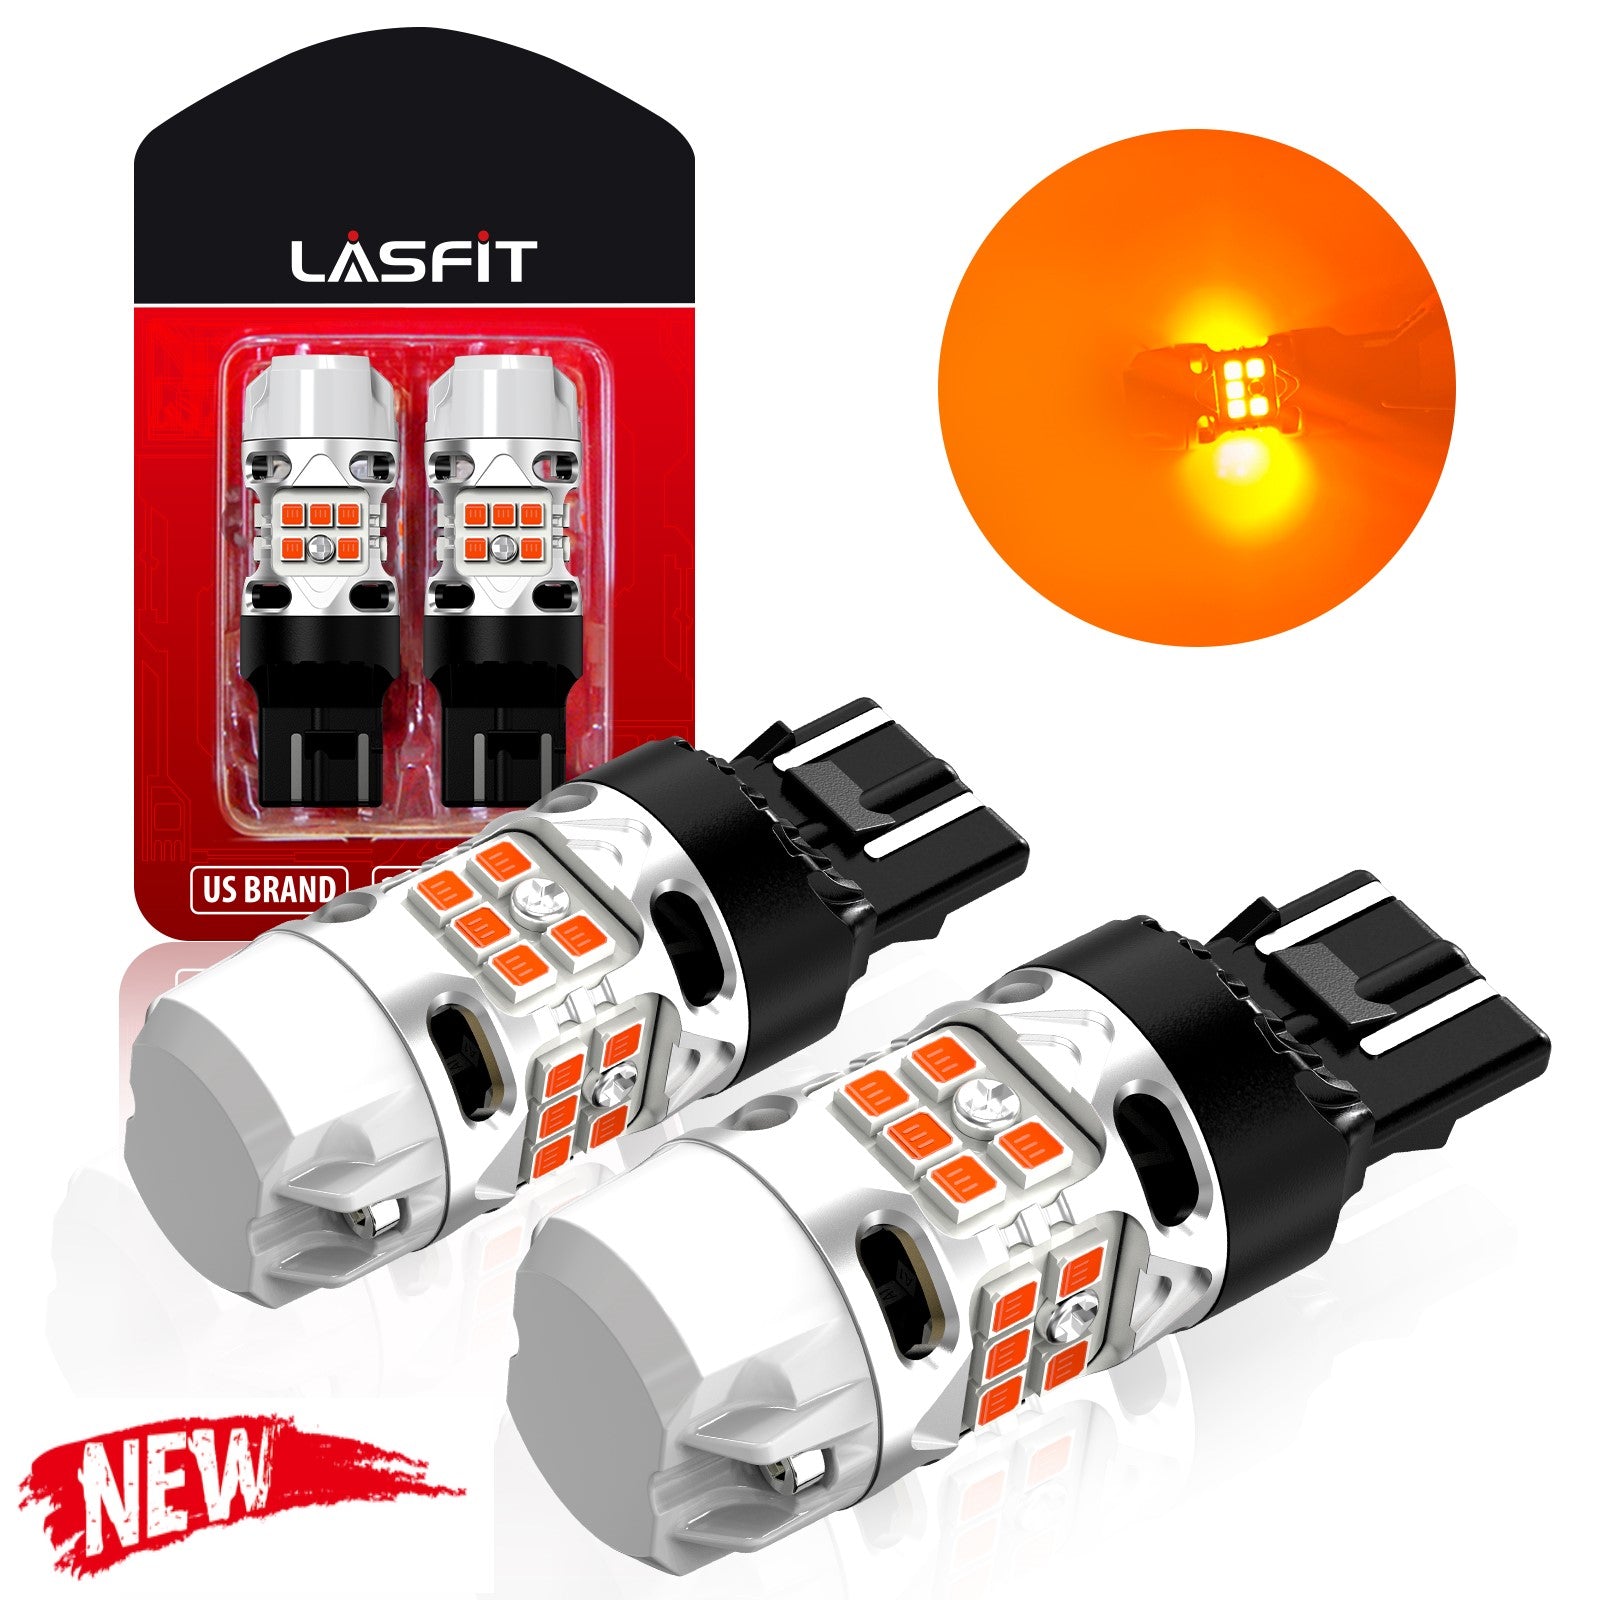  SIR IUS LED RLS 7440 7440A - Bombilla LED  antihiperintermitente, luz intermitente, luz intermitente, color ámbar,  naranja, cuerpo completo, de aluminio, filamento único, sin errores,  paquete de 2 : Automotriz